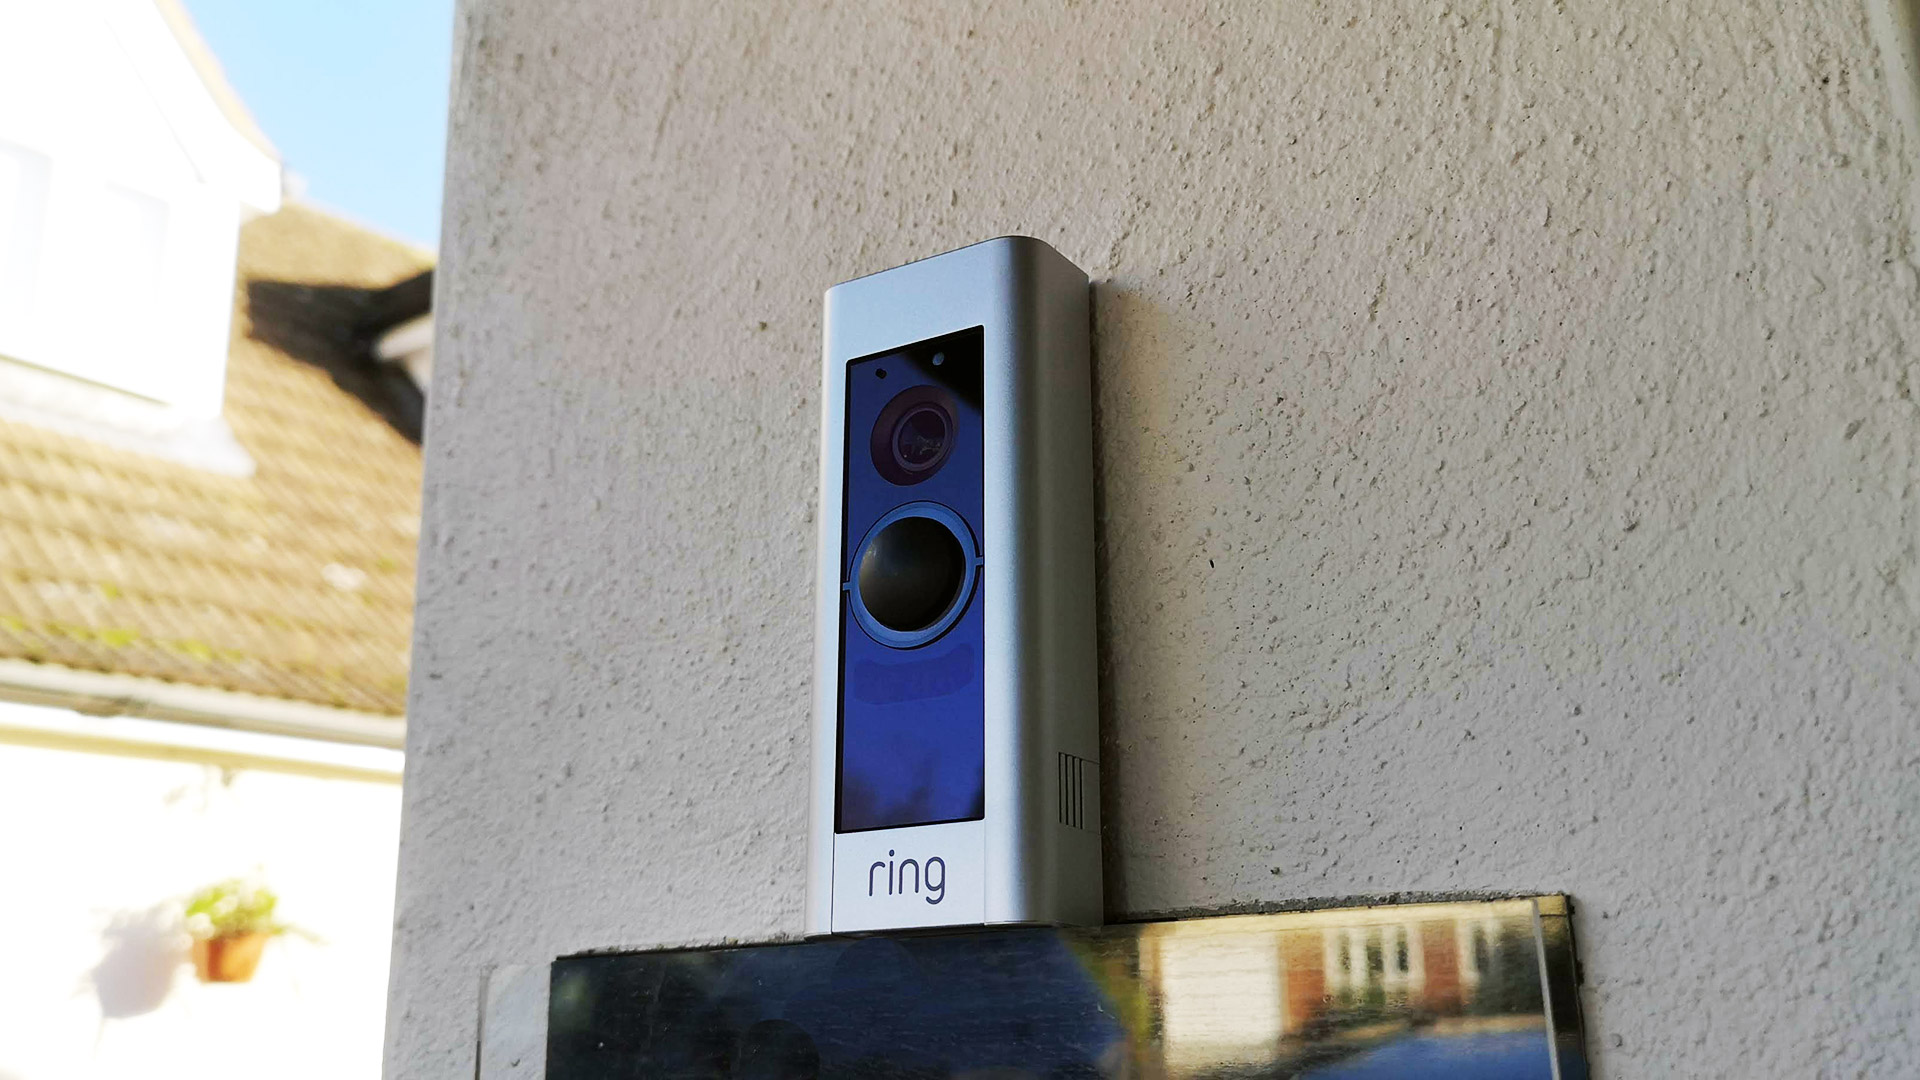 ring video doorbell cloud cost